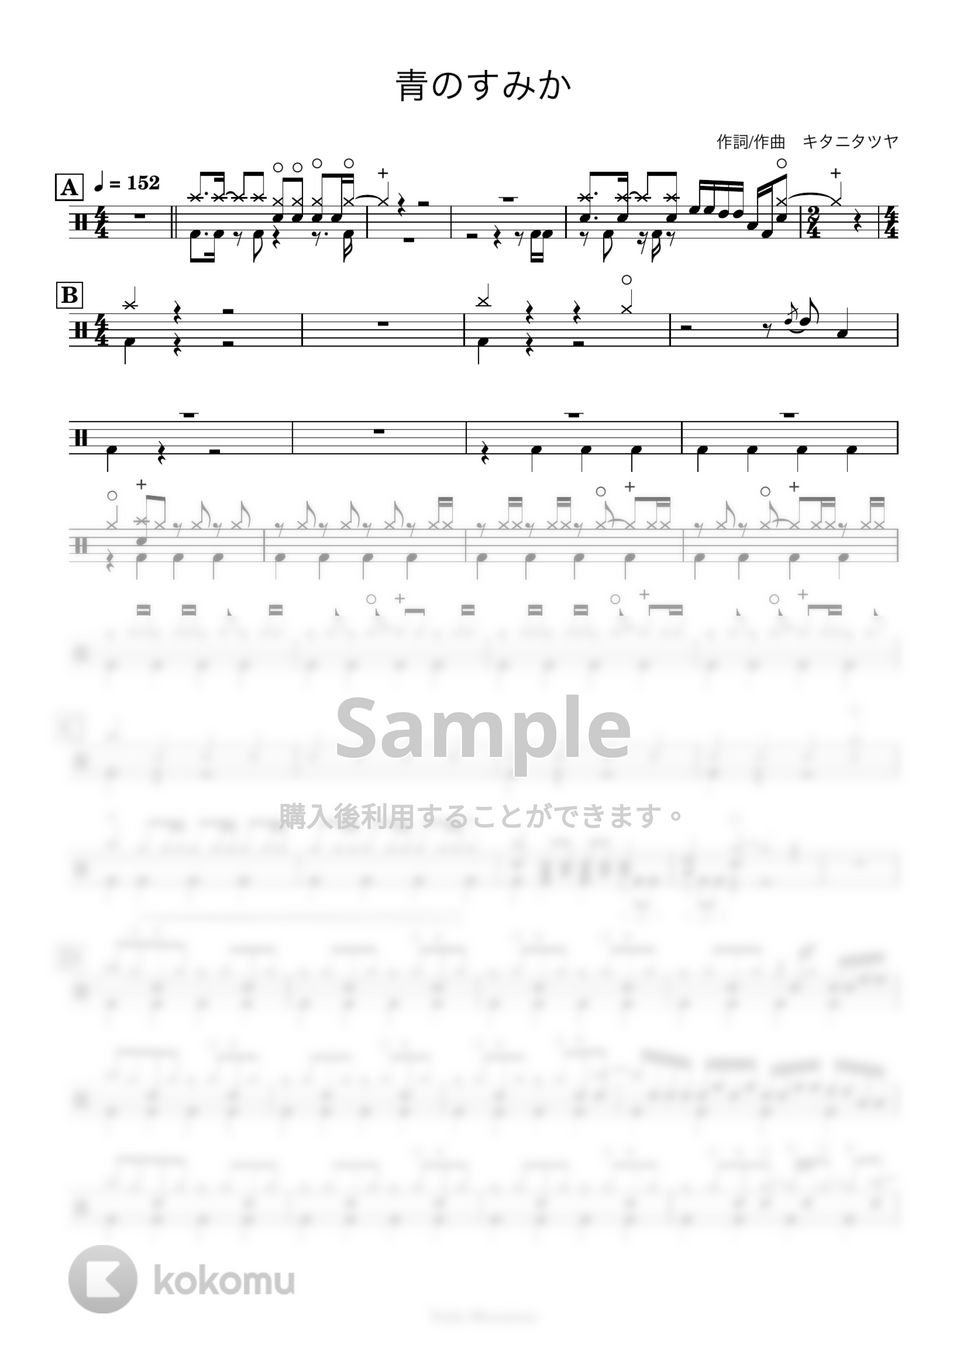 キタニタツヤ - 【ドラム譜】青のすみか【簡単アレンジ】 by Taiki Mizumoto